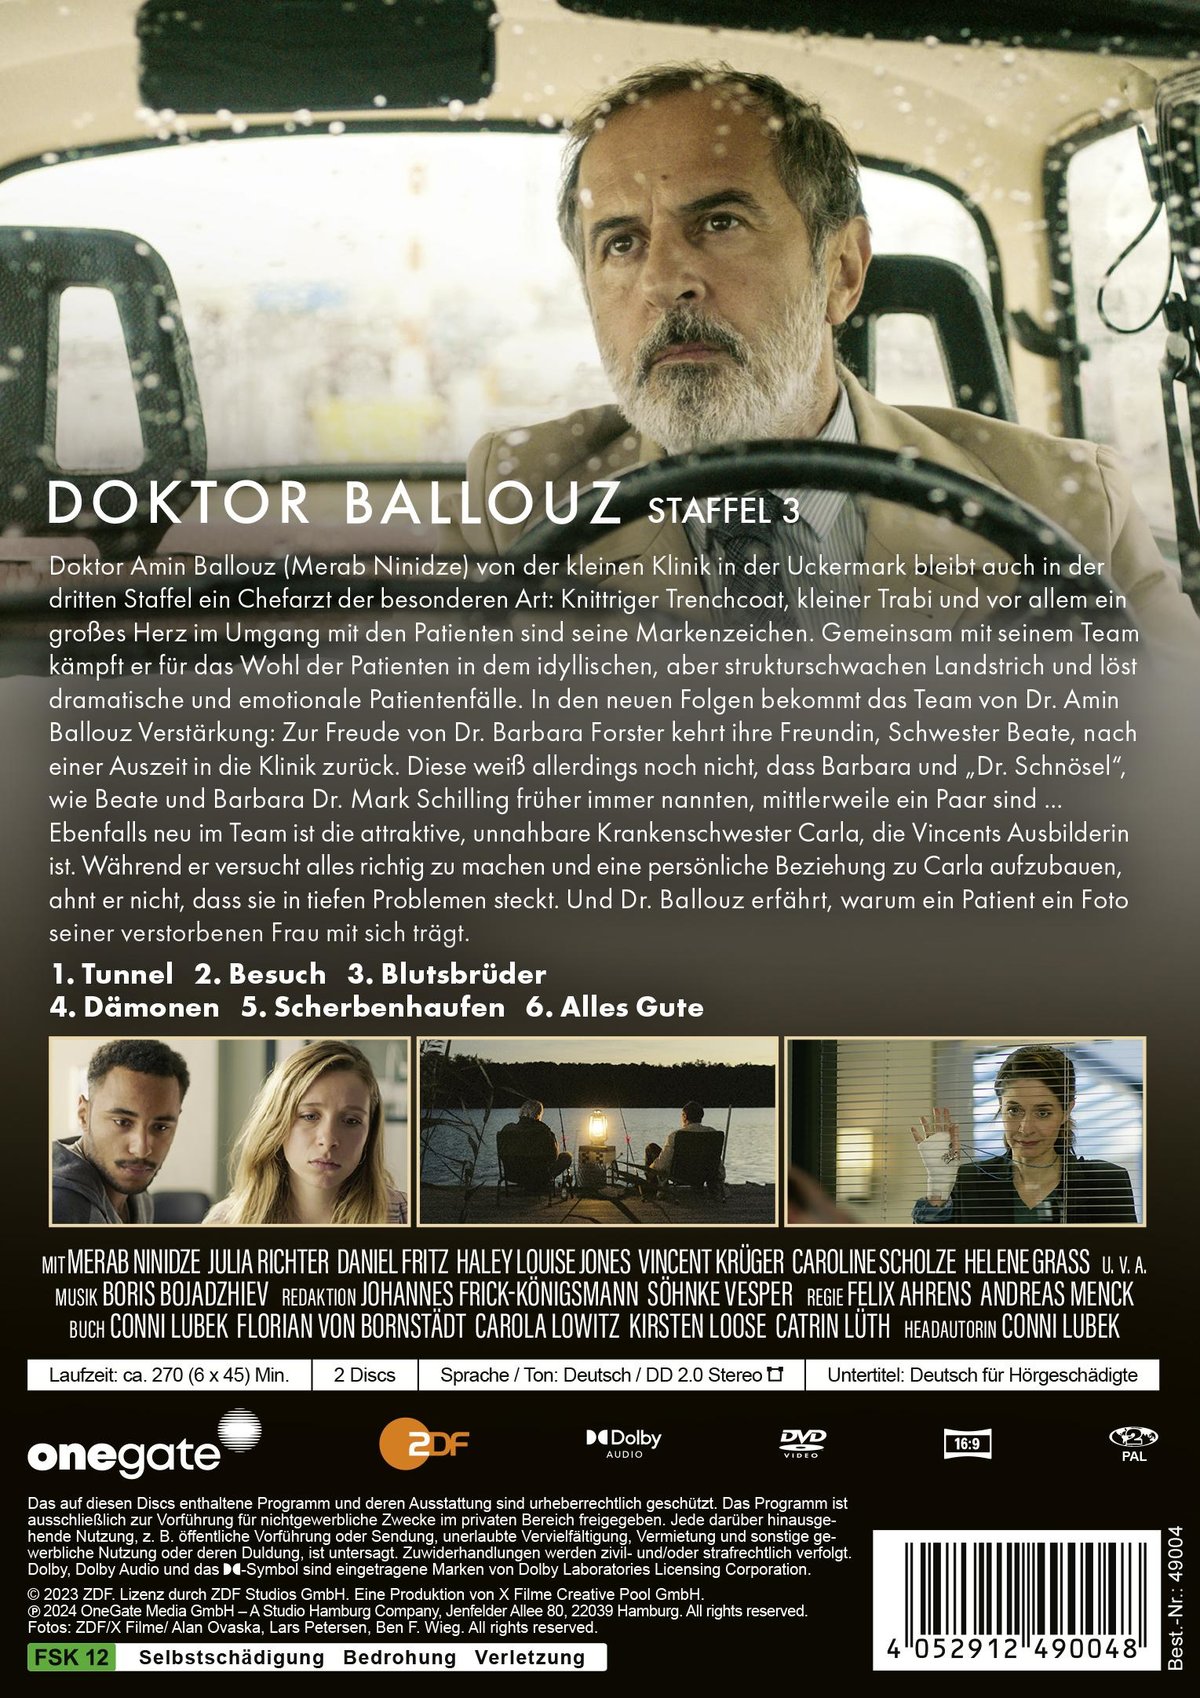 Doktor Ballouz Staffel 3  [2 DVDs]  (DVD)